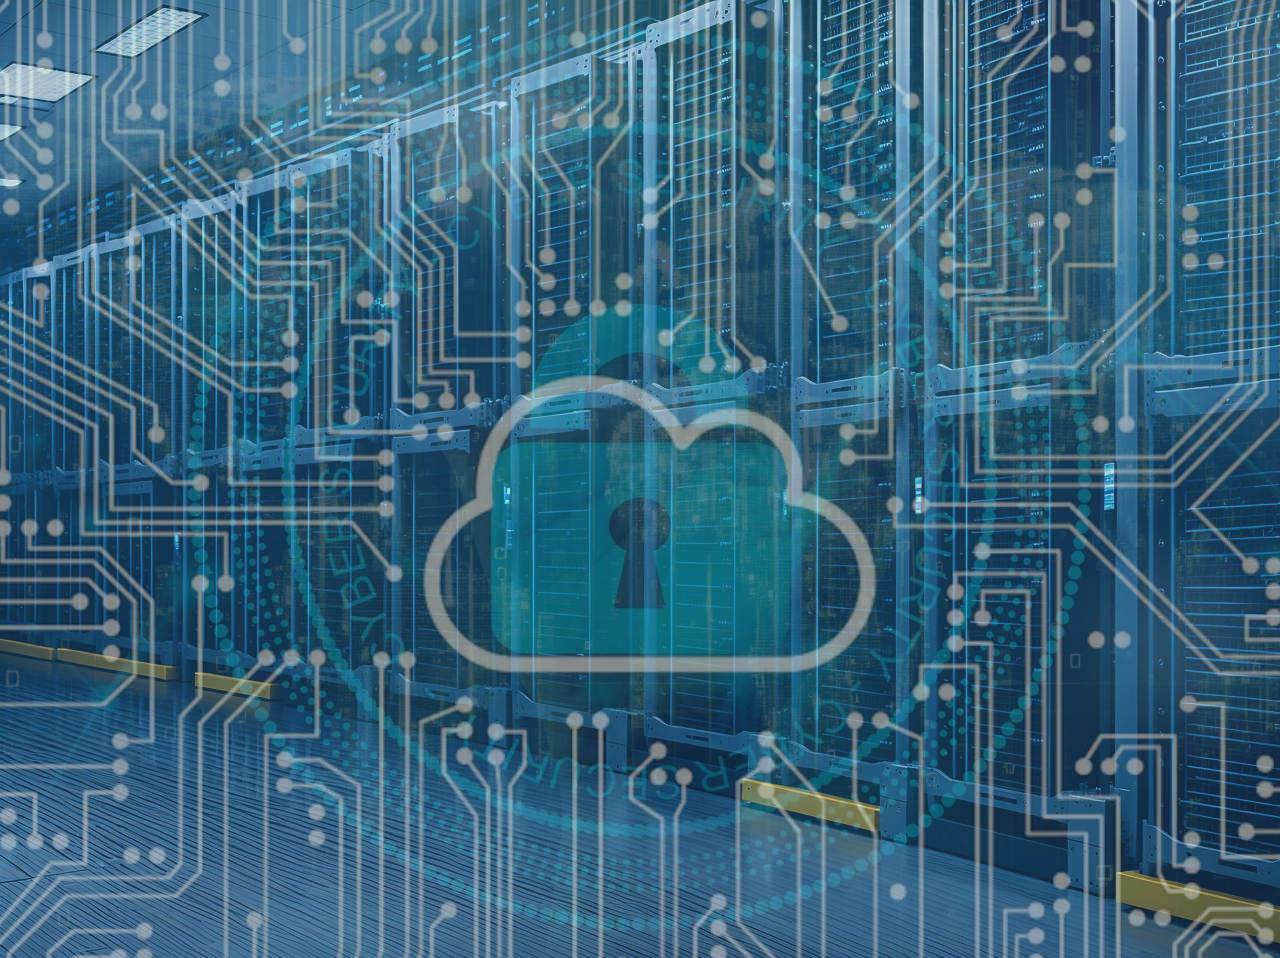 Imagen de un CPD sobre un Cloud con Ciber Seguridad con fondo del Mapa Mundial estilo Matrix